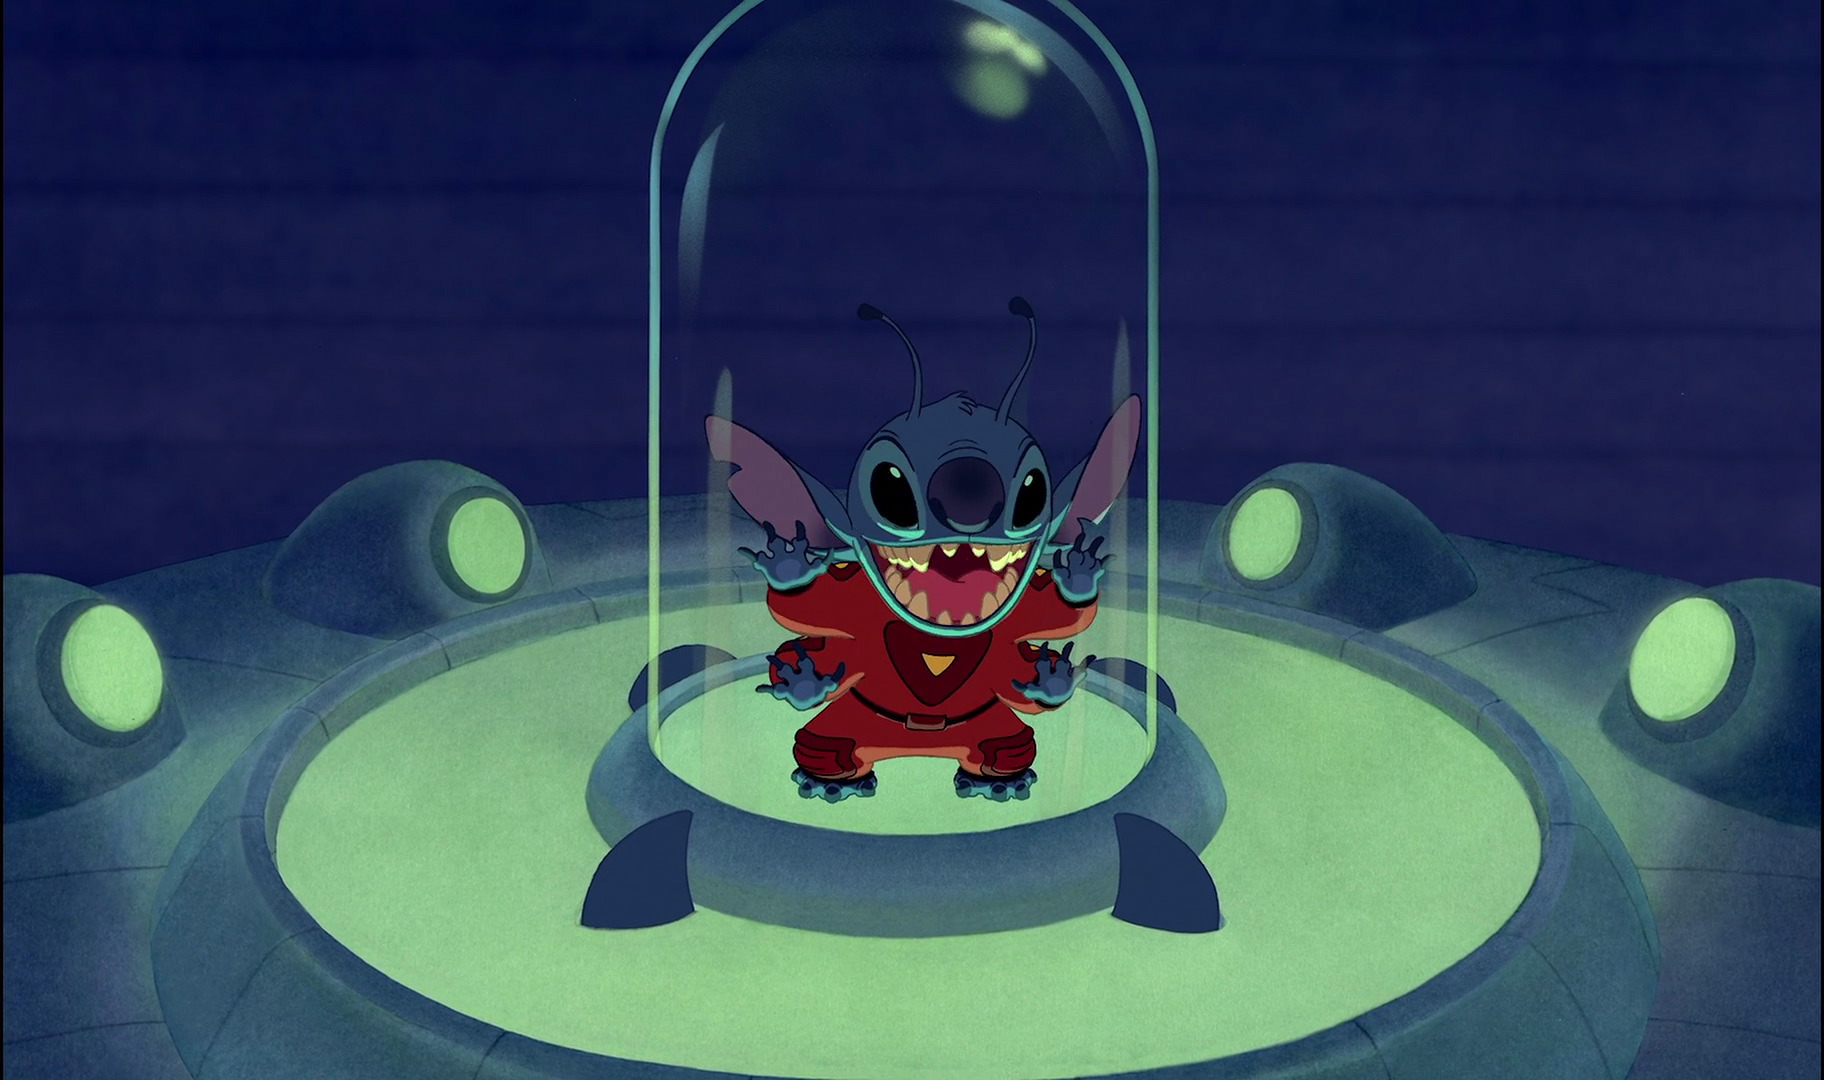 Zach Galifianakis Cast As Pleakley in Disney's Lilo & Stitch